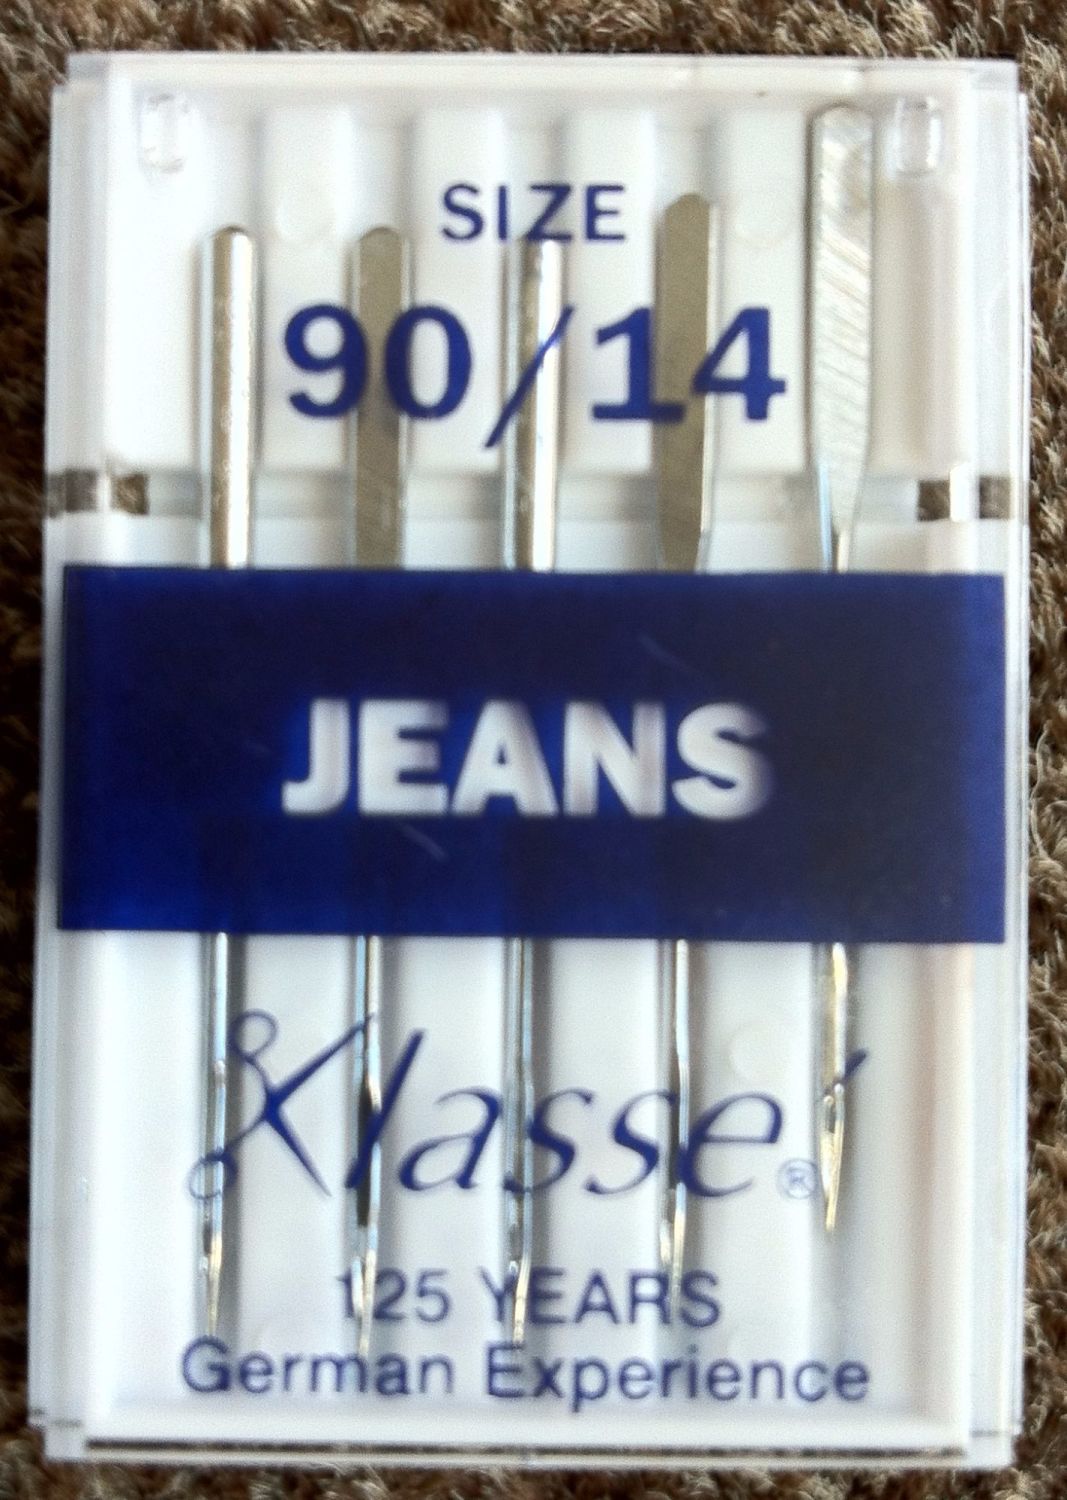 KLASSE SEWING MACHINE NEEDLES - JEANS 90/14